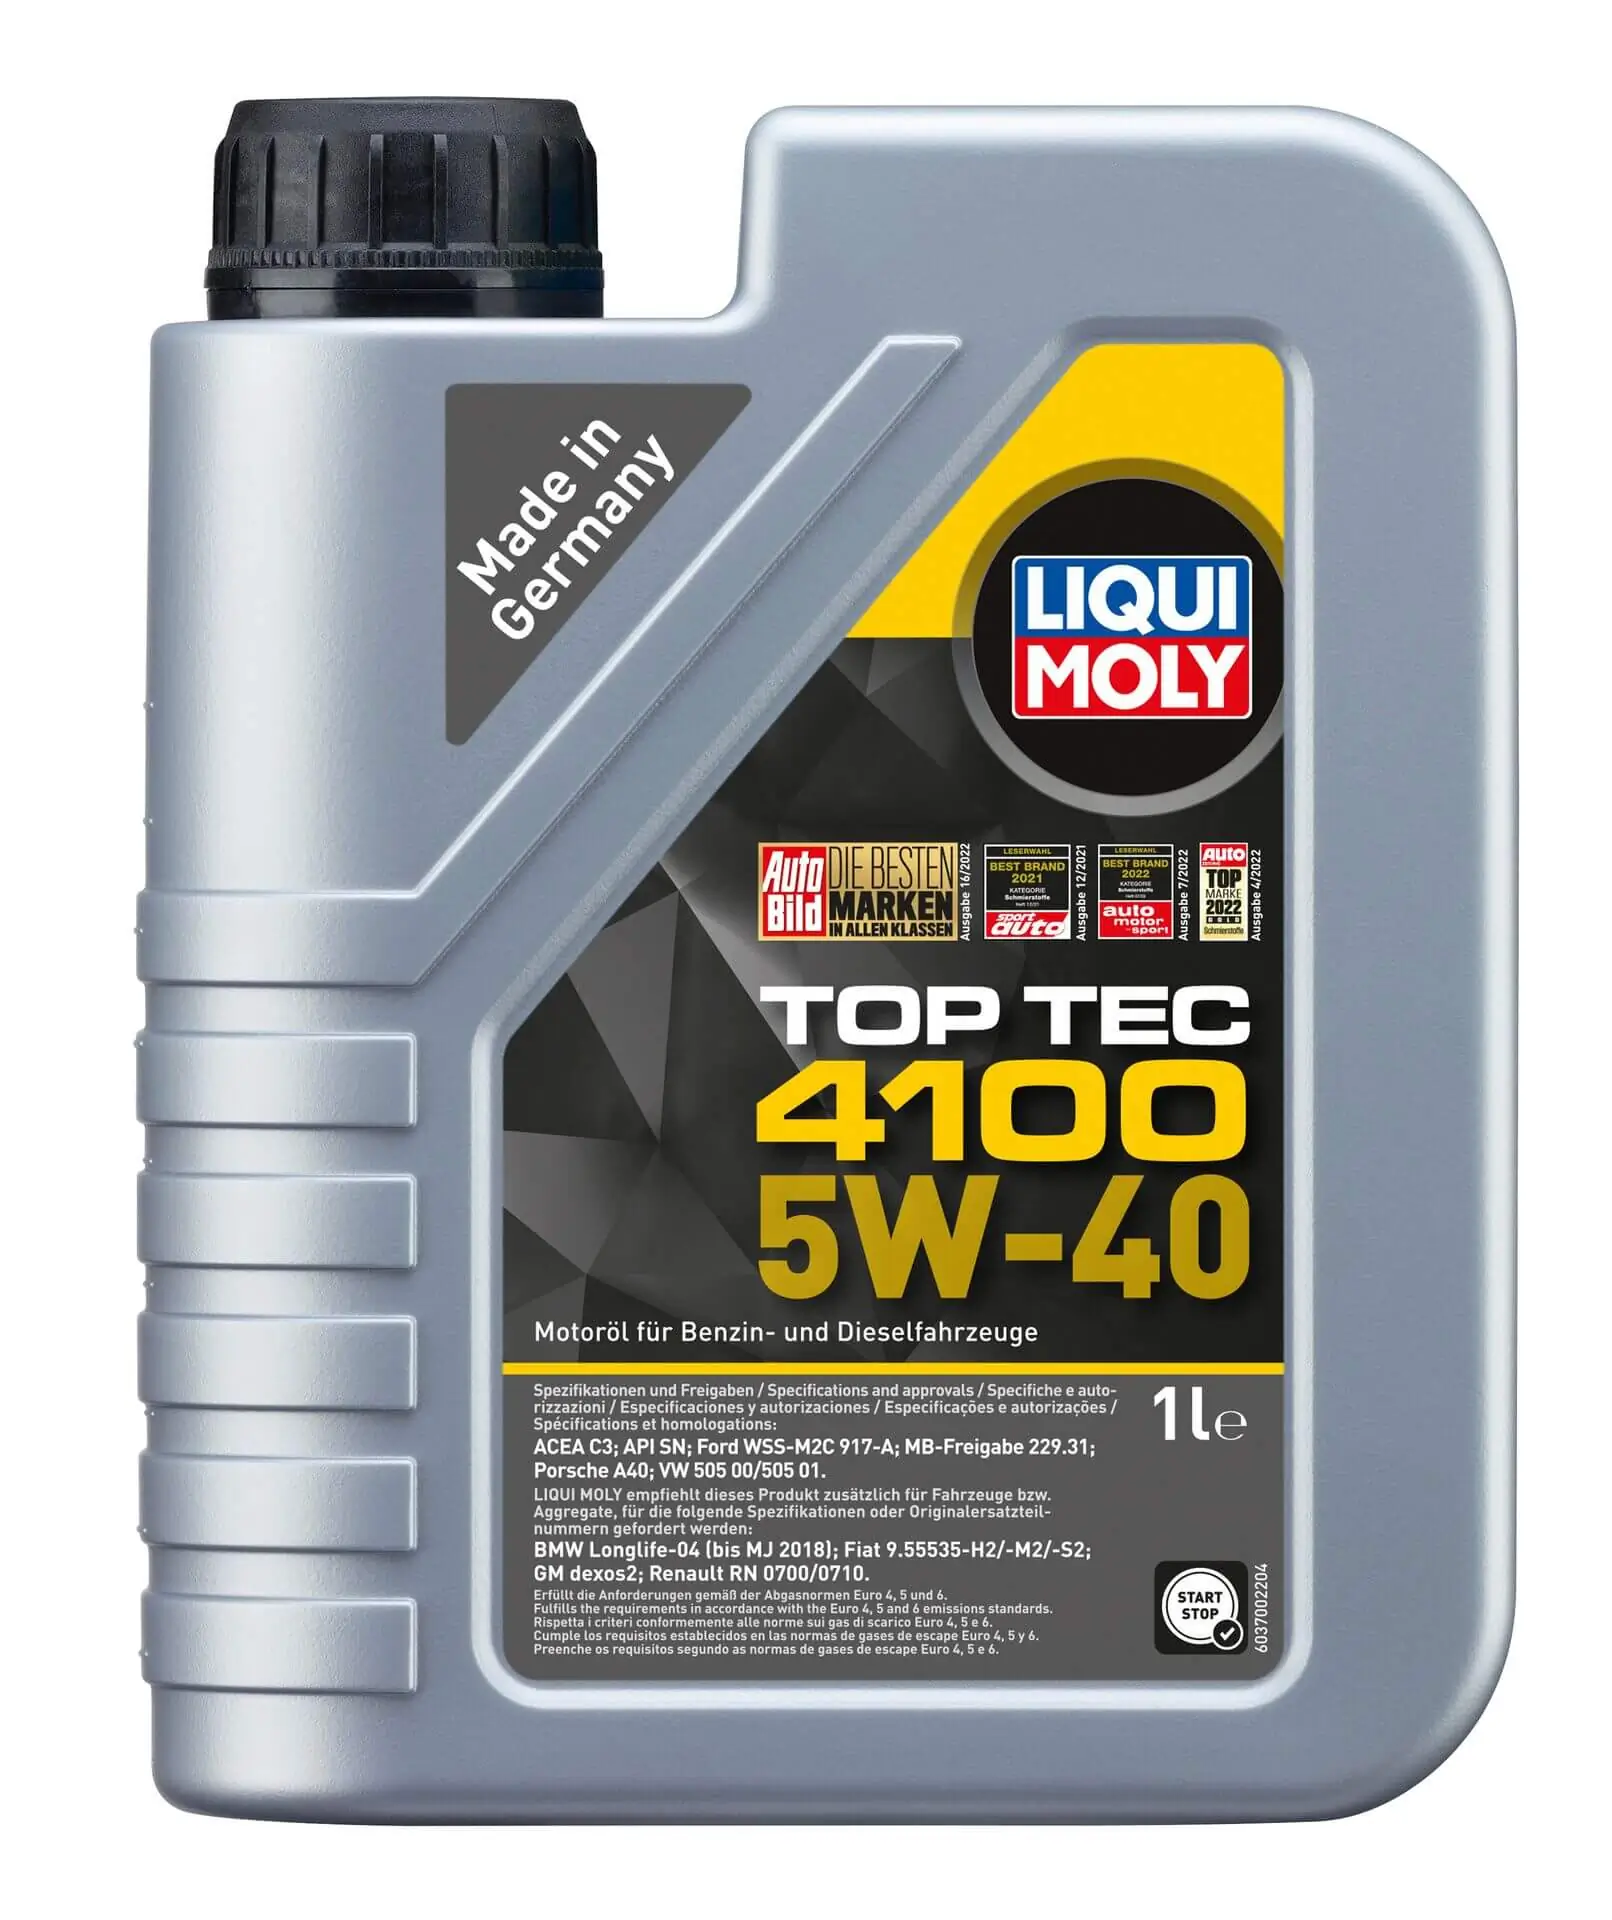 LIQUI MOLY TOP TEC 4100 5W-40 1L